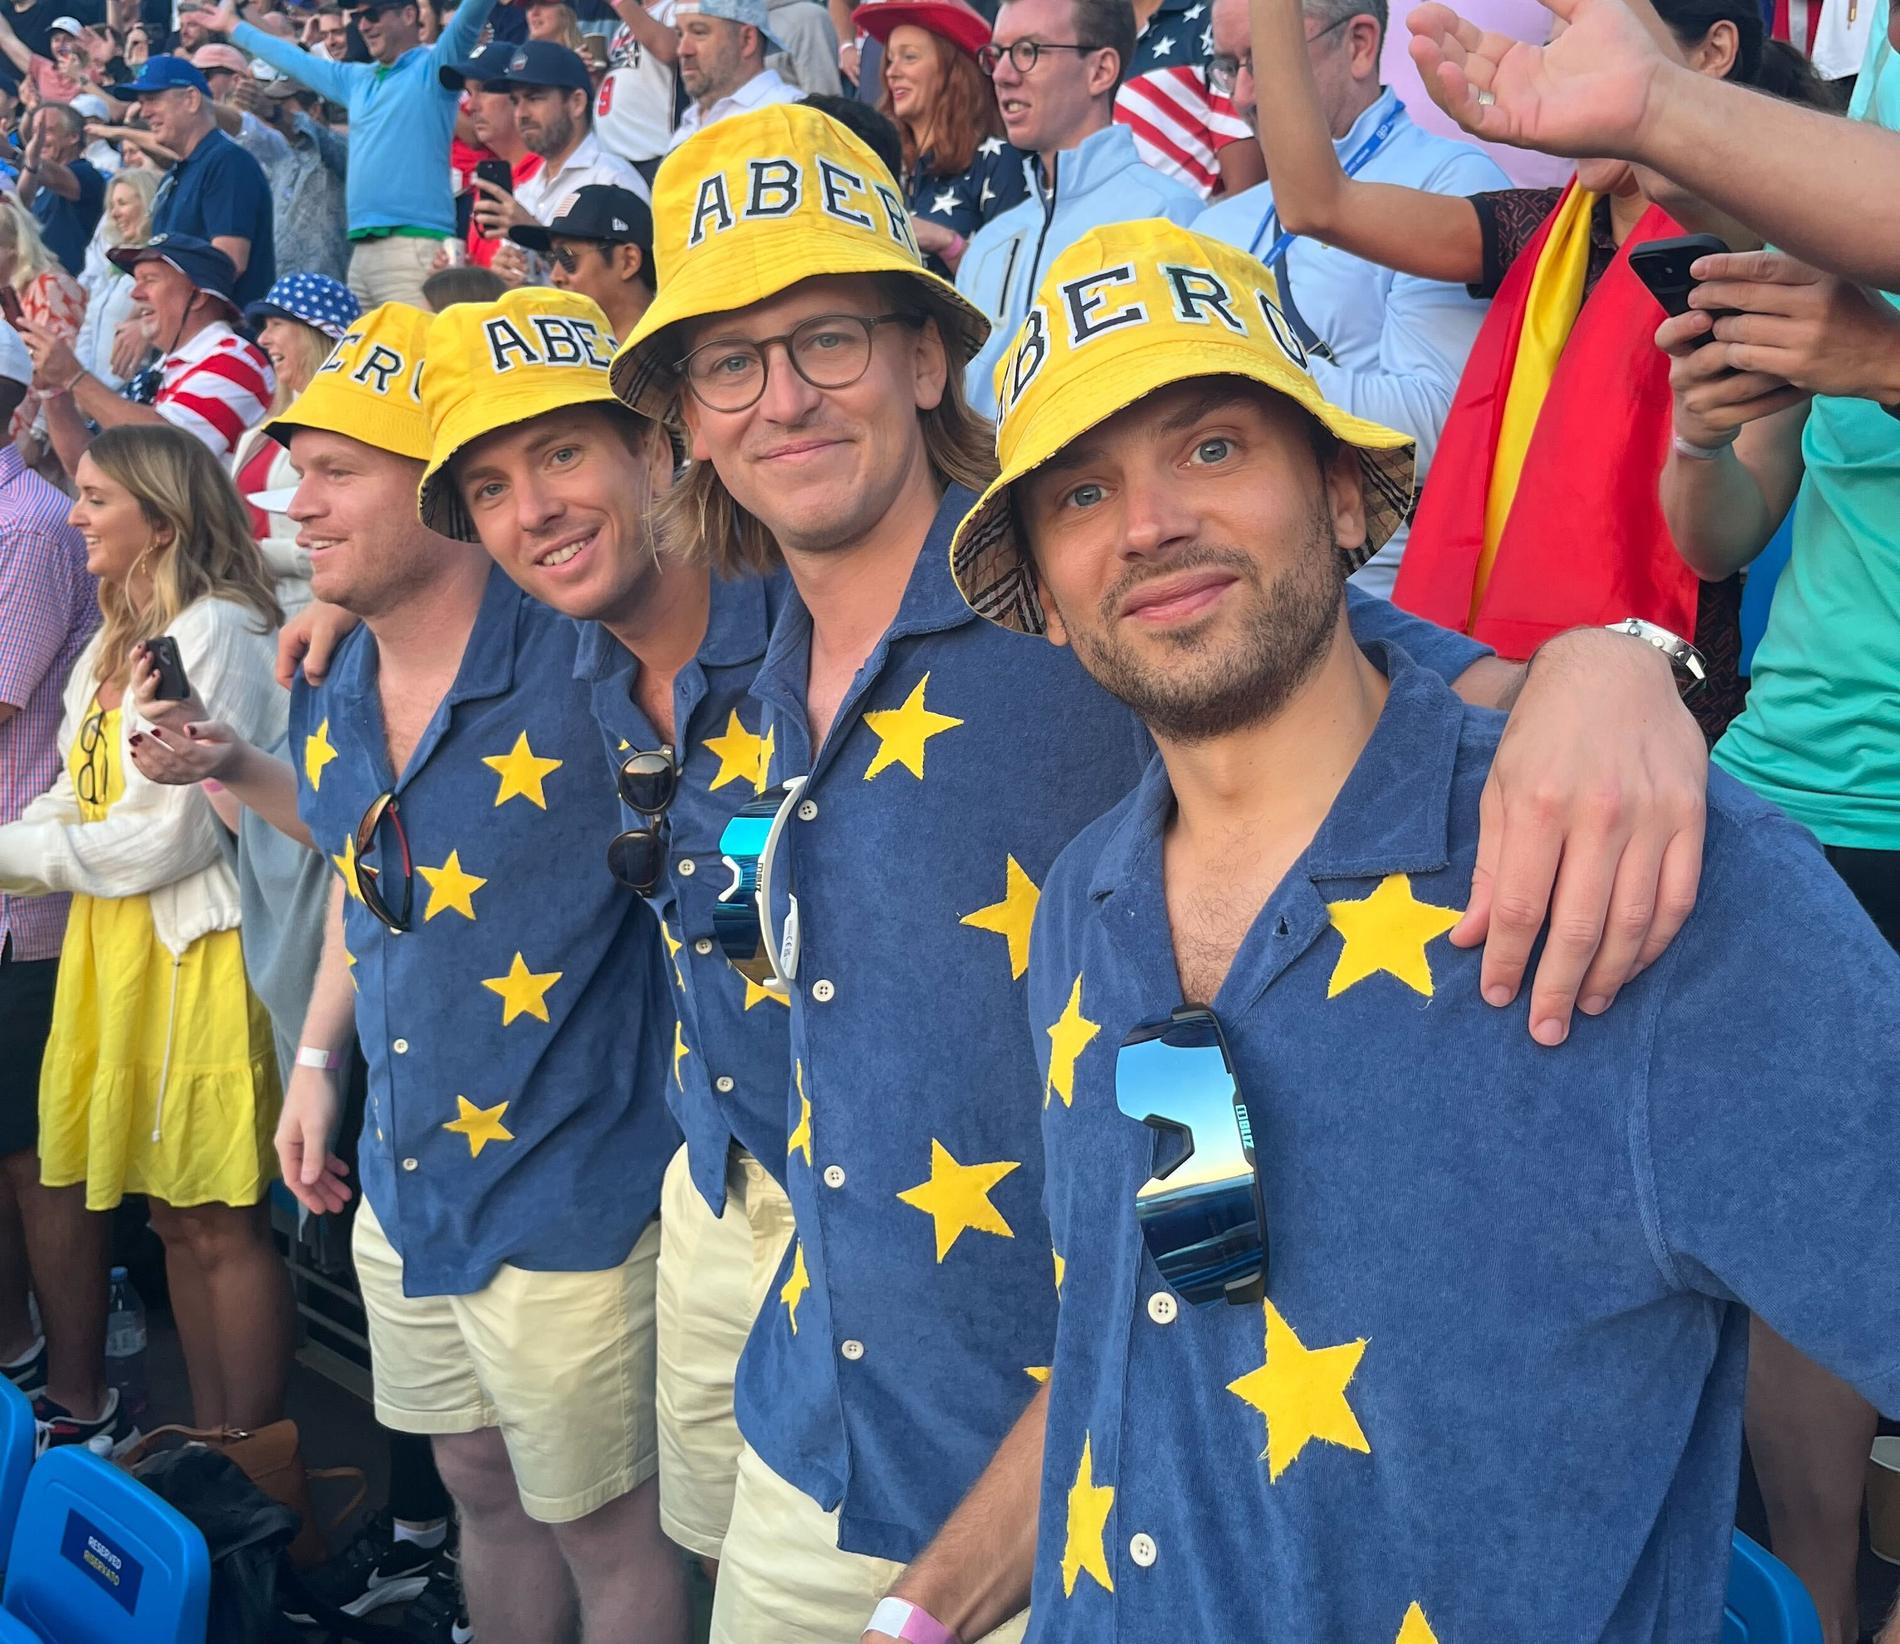 De svenska fansen som tog med sig Stenson-flaggan (Marcus Fleetwood längst till höger).